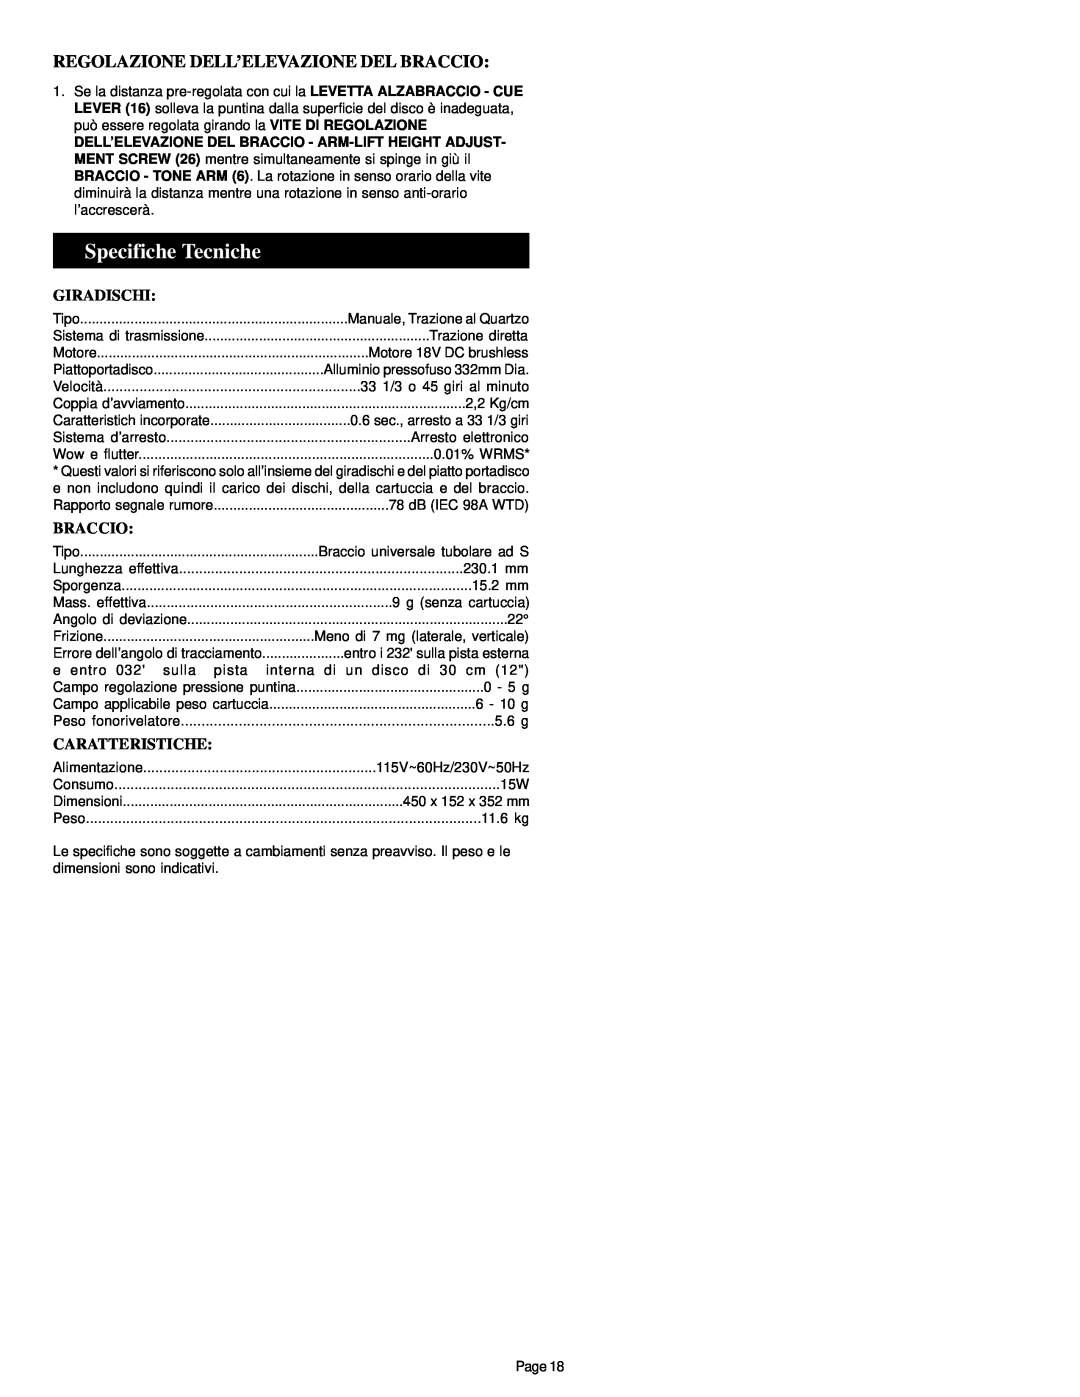 Gemini PT-1000 II manual Specifiche Tecniche, Regolazione Dell’Elevazione Del Braccio, Giradischi, Caratteristiche 